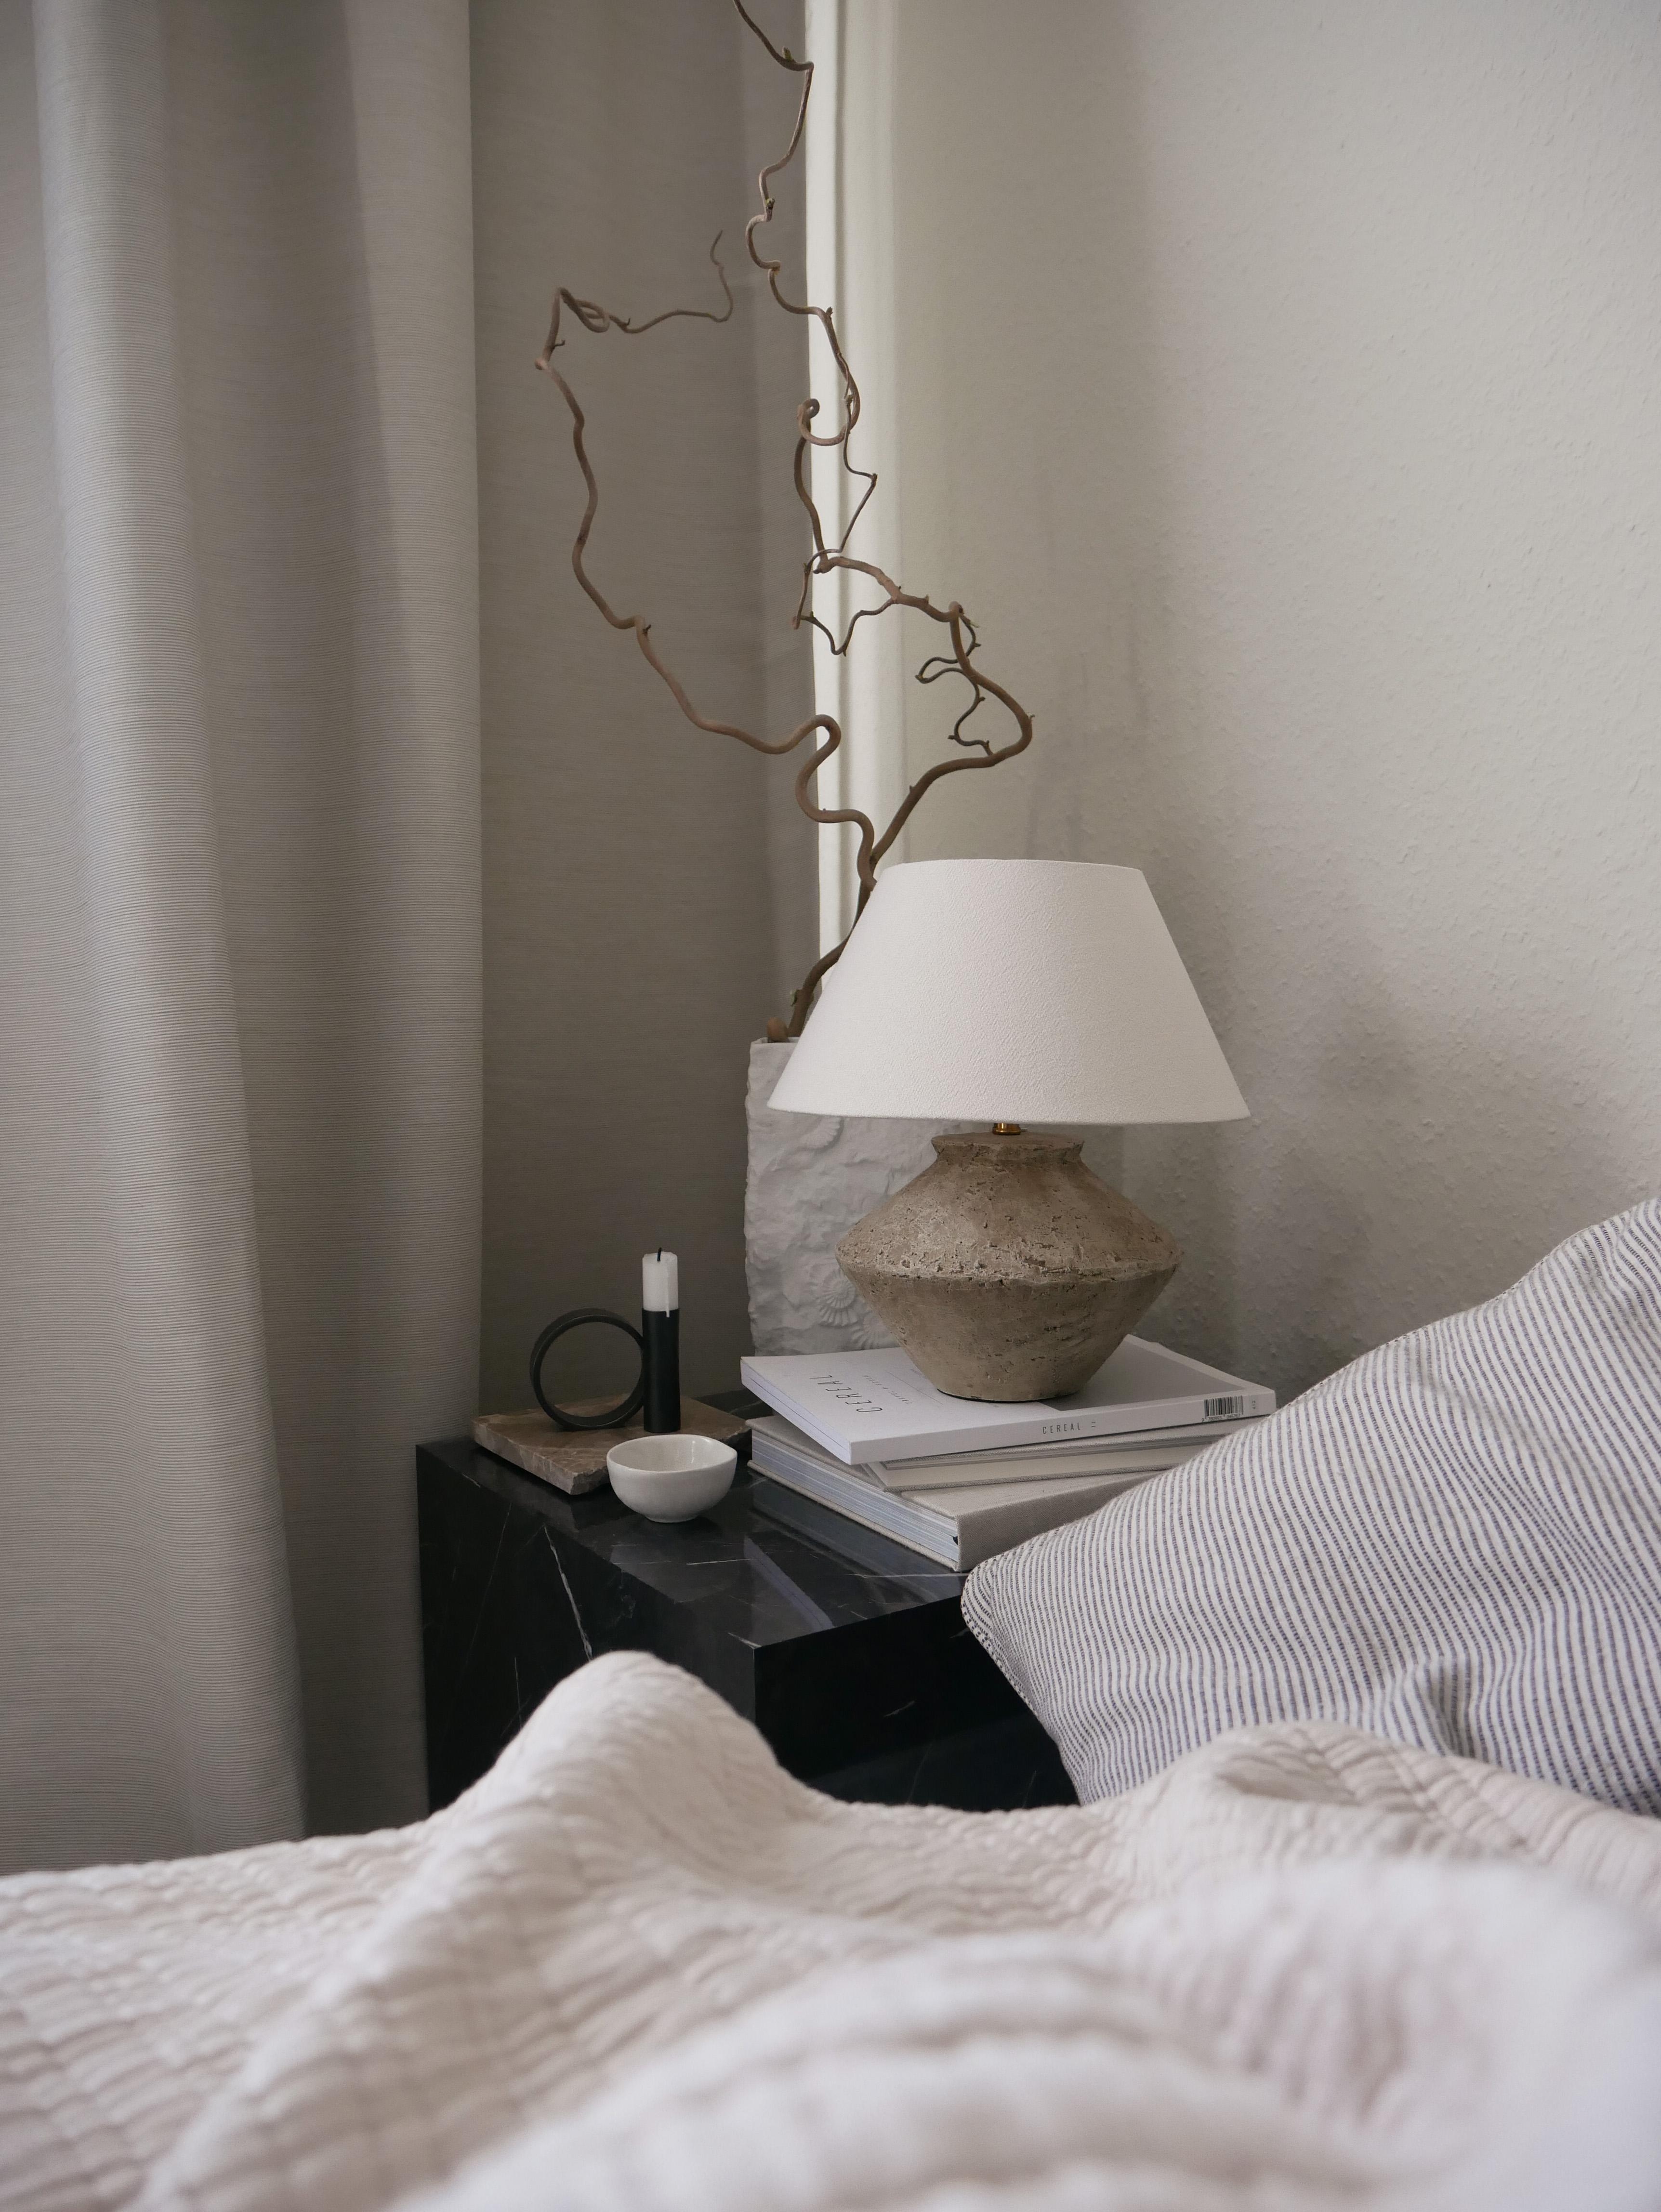 small corner next to the bed #bedroomdecor #tablelamp #bedroom #nachtisch #nachtischlampe #materialmix #altbau 